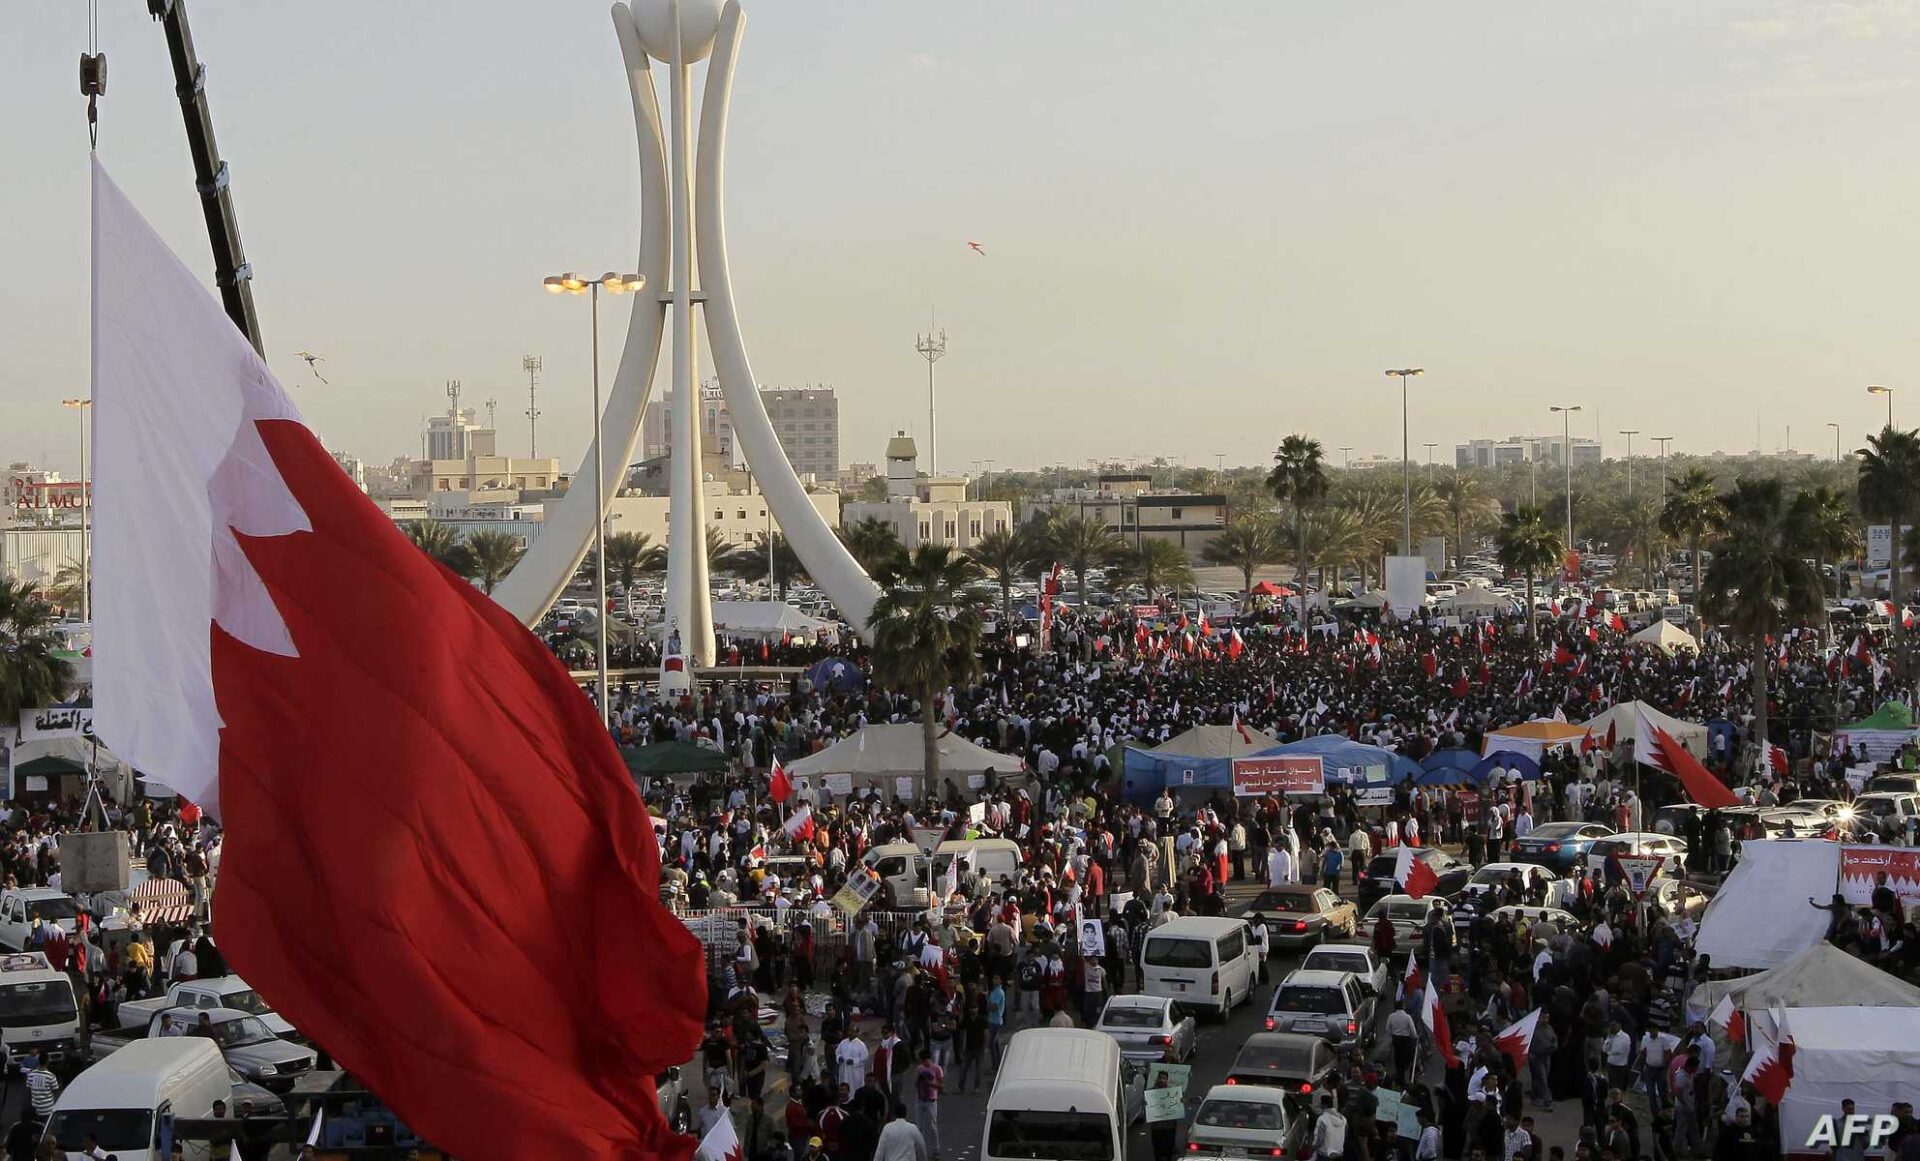 شعب البحرين يحيي ذكرى الثورة بفعاليّات متنوّعة